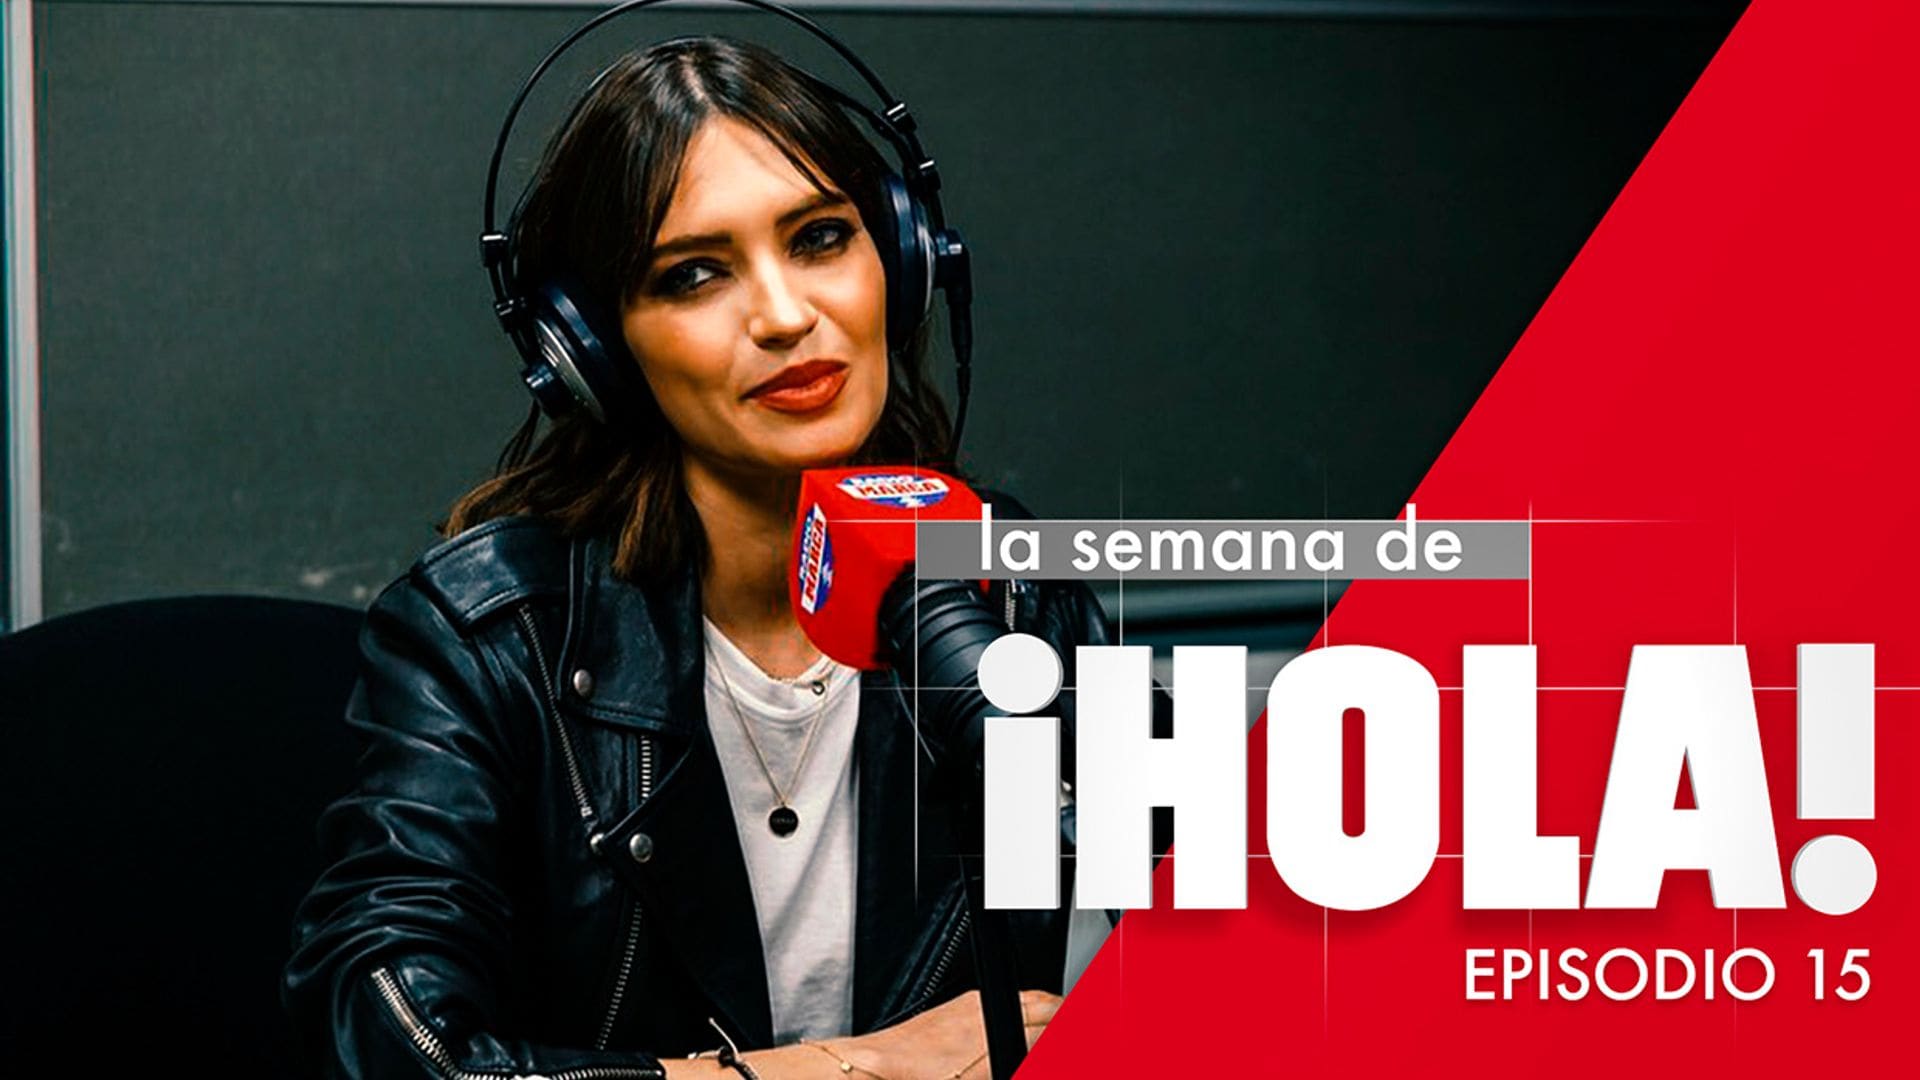 Las lágrimas de Sara Carbonero en su programa: la noticia más destacada de la semana en HOLA.com